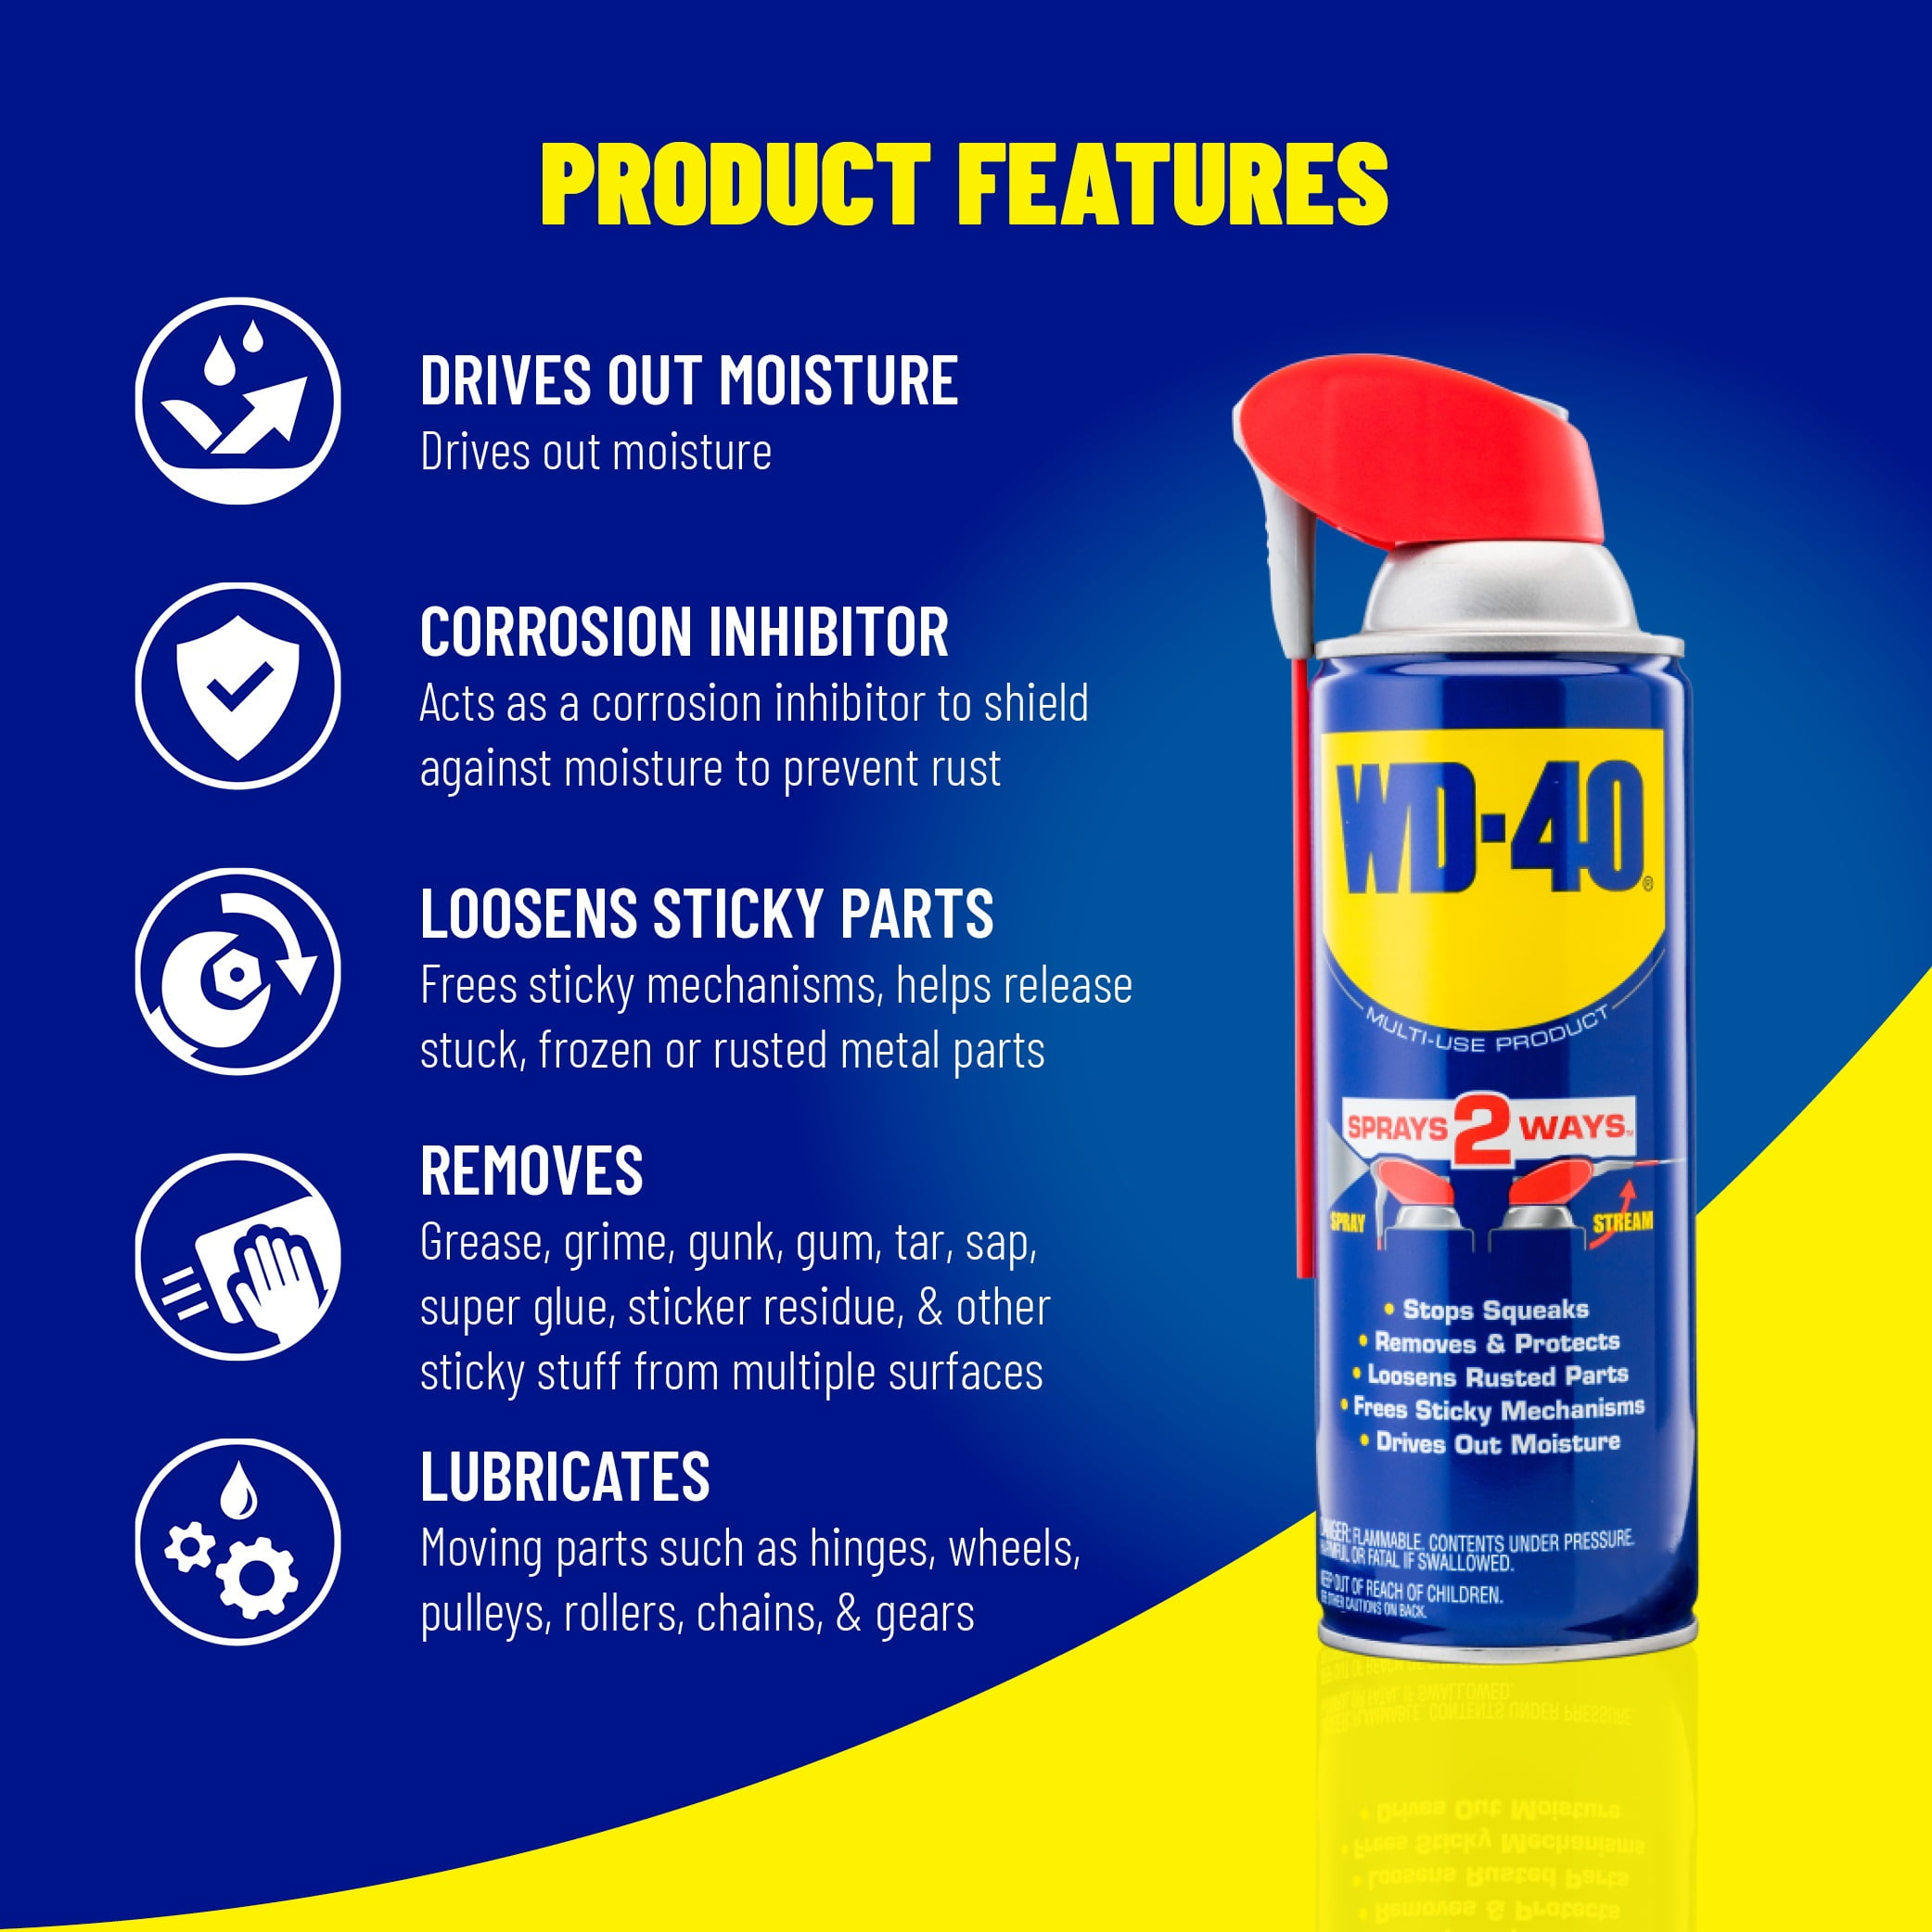 Wd 40 Multi Use Product With Smart Straw Sprays 2 Ways Multi Purpose